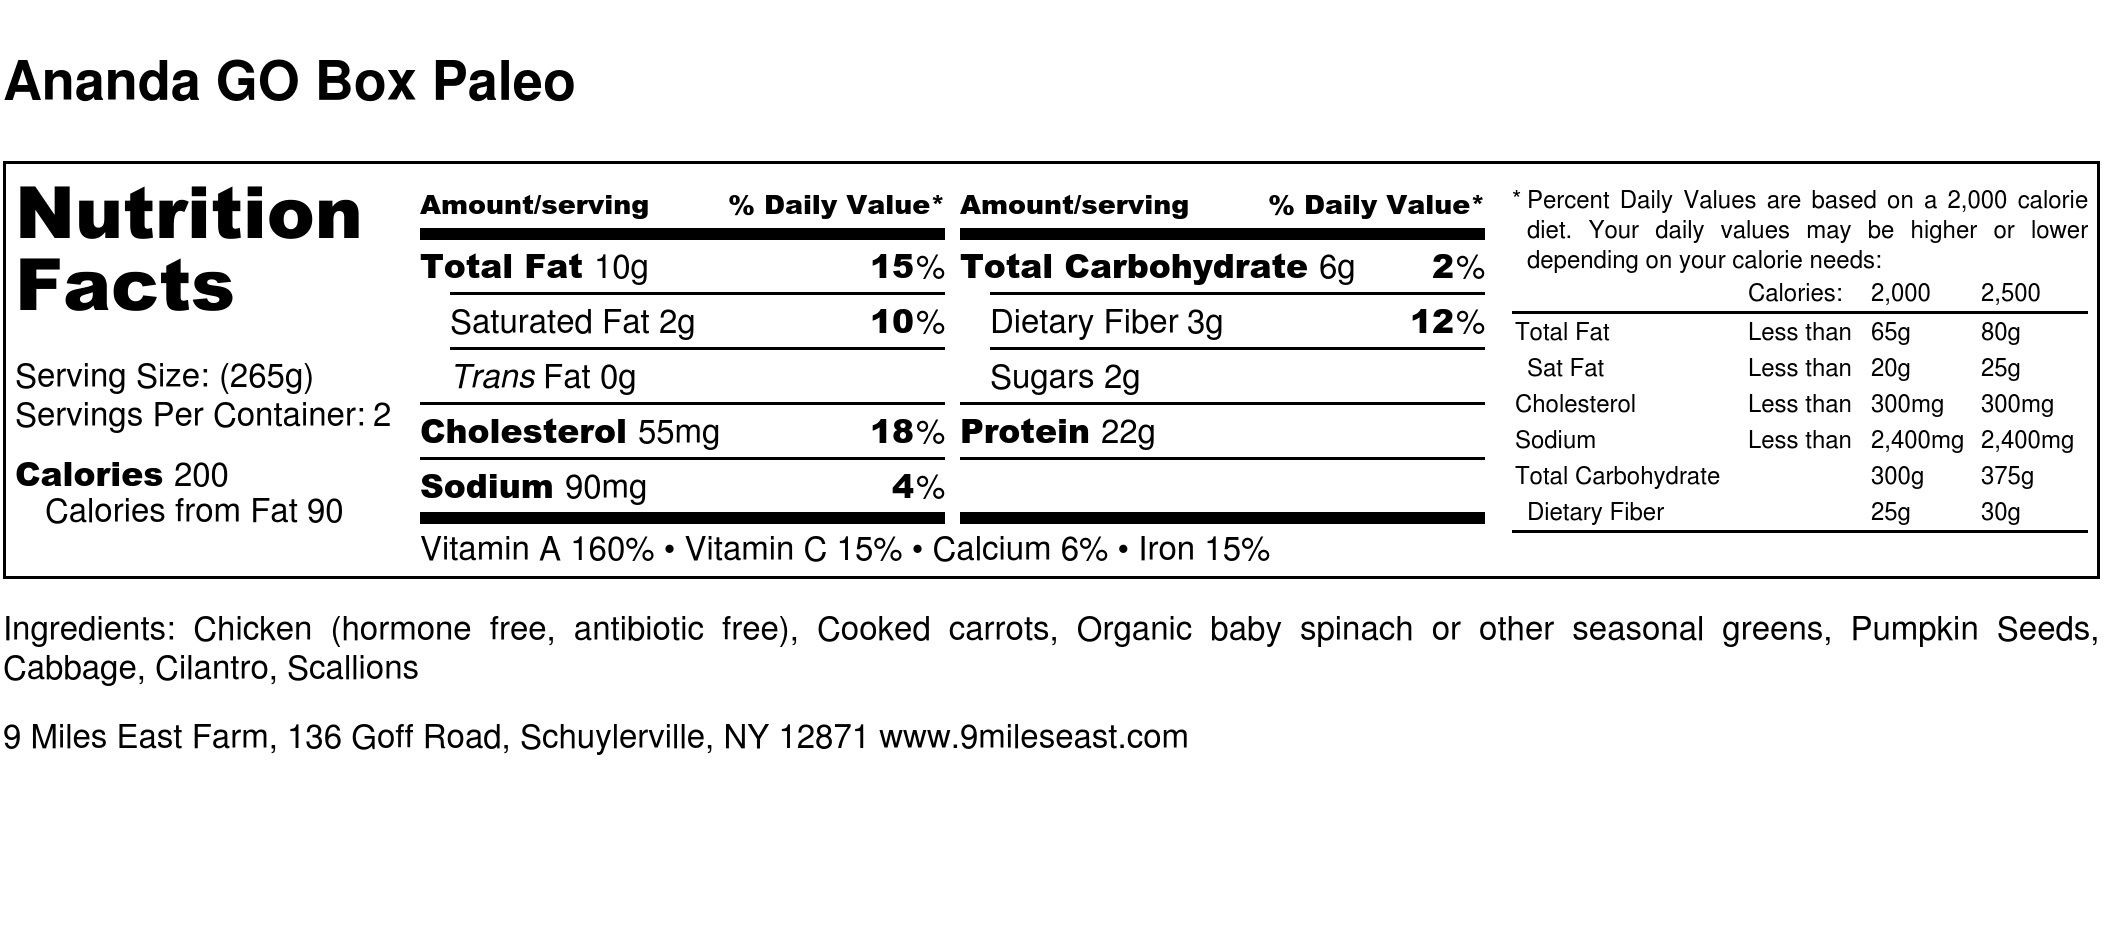 Ananda GO Box Paleo - Nutrition Label.jpg